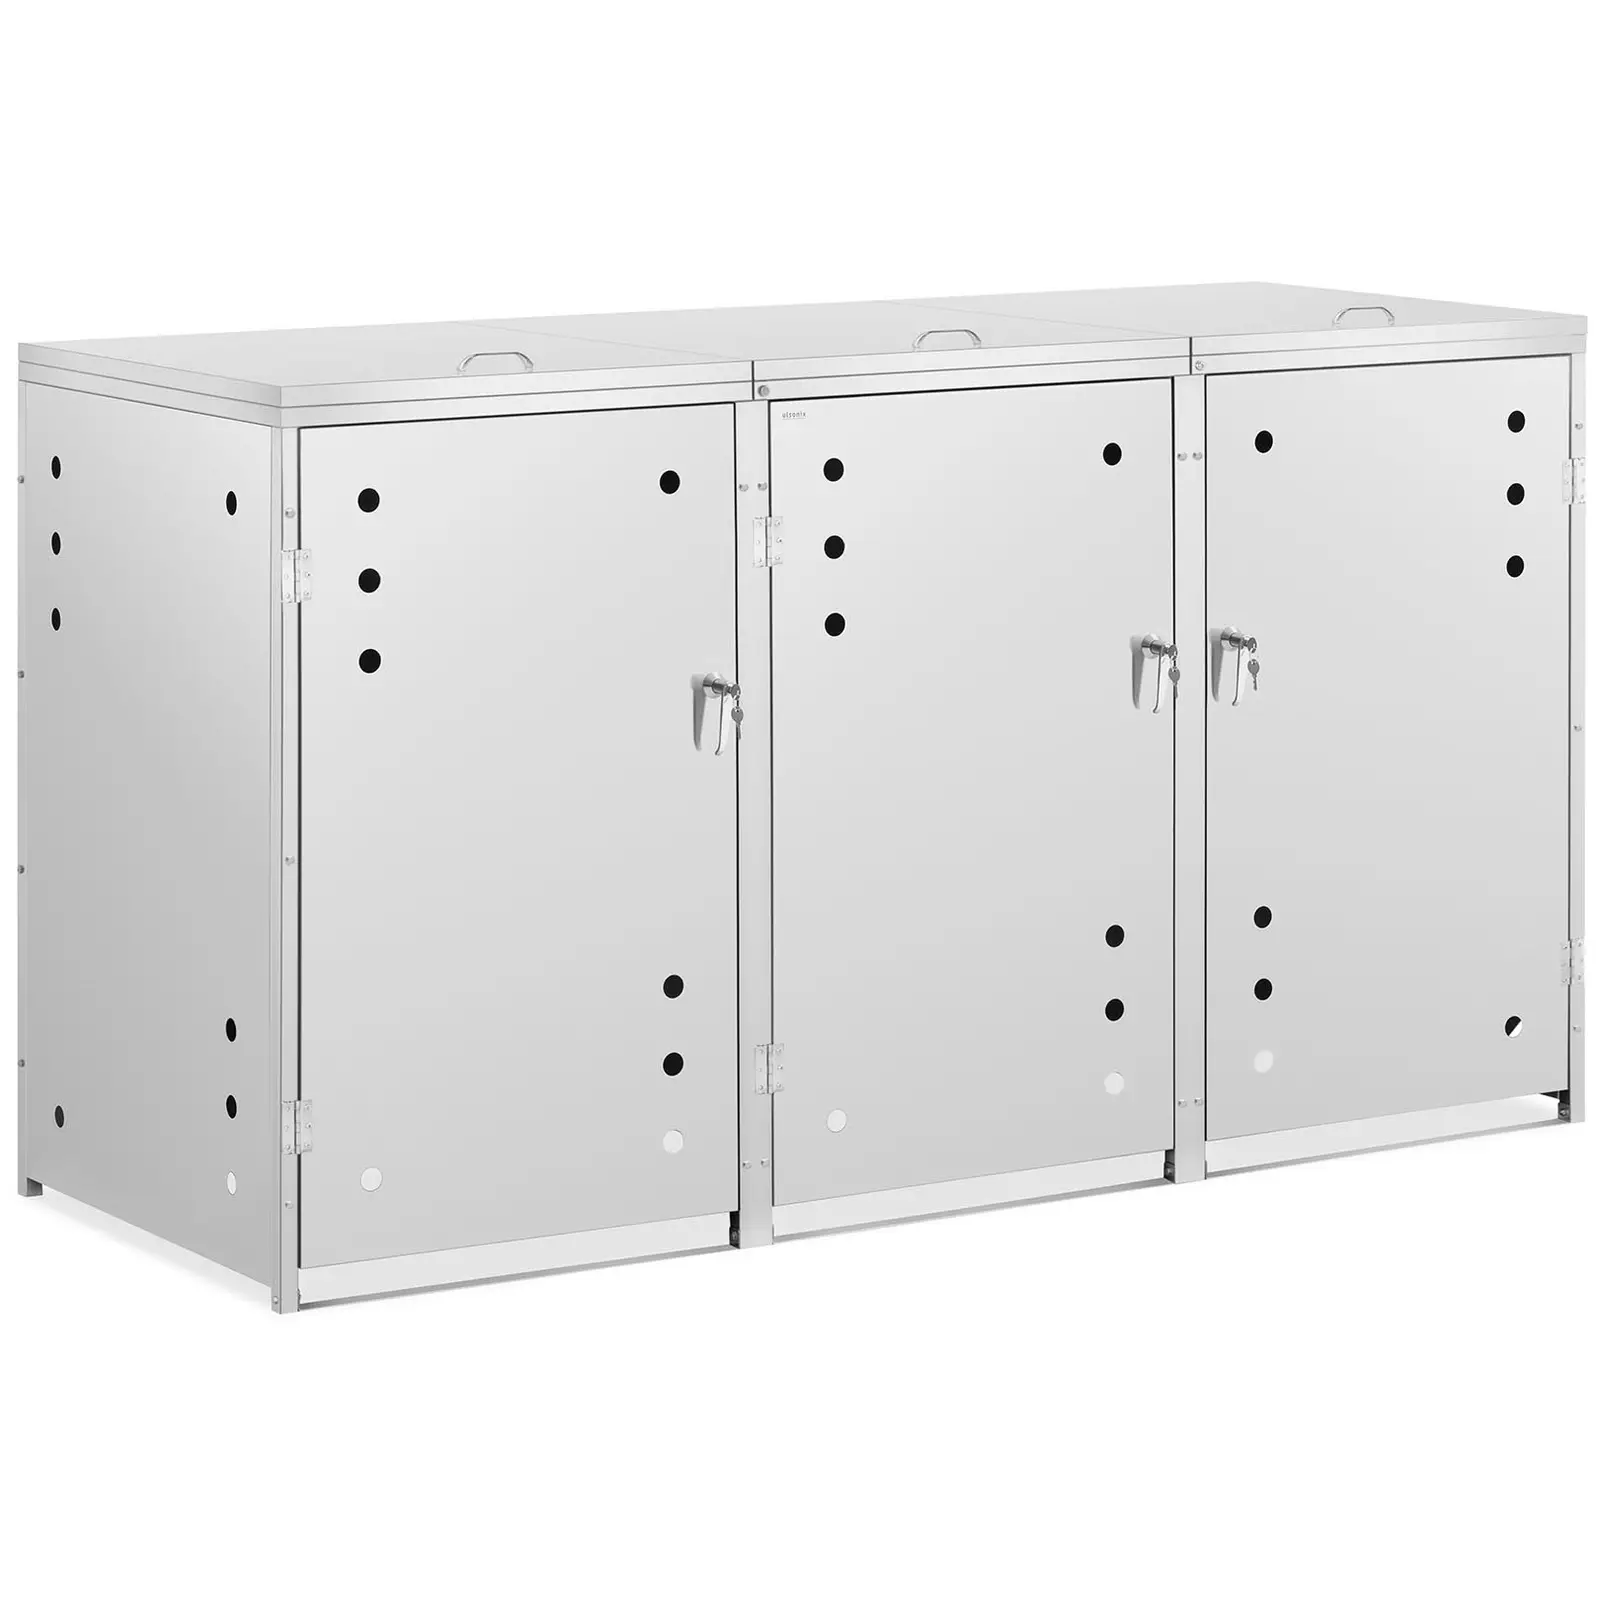 Bin Storage Box - 3 x 240 L - air holes